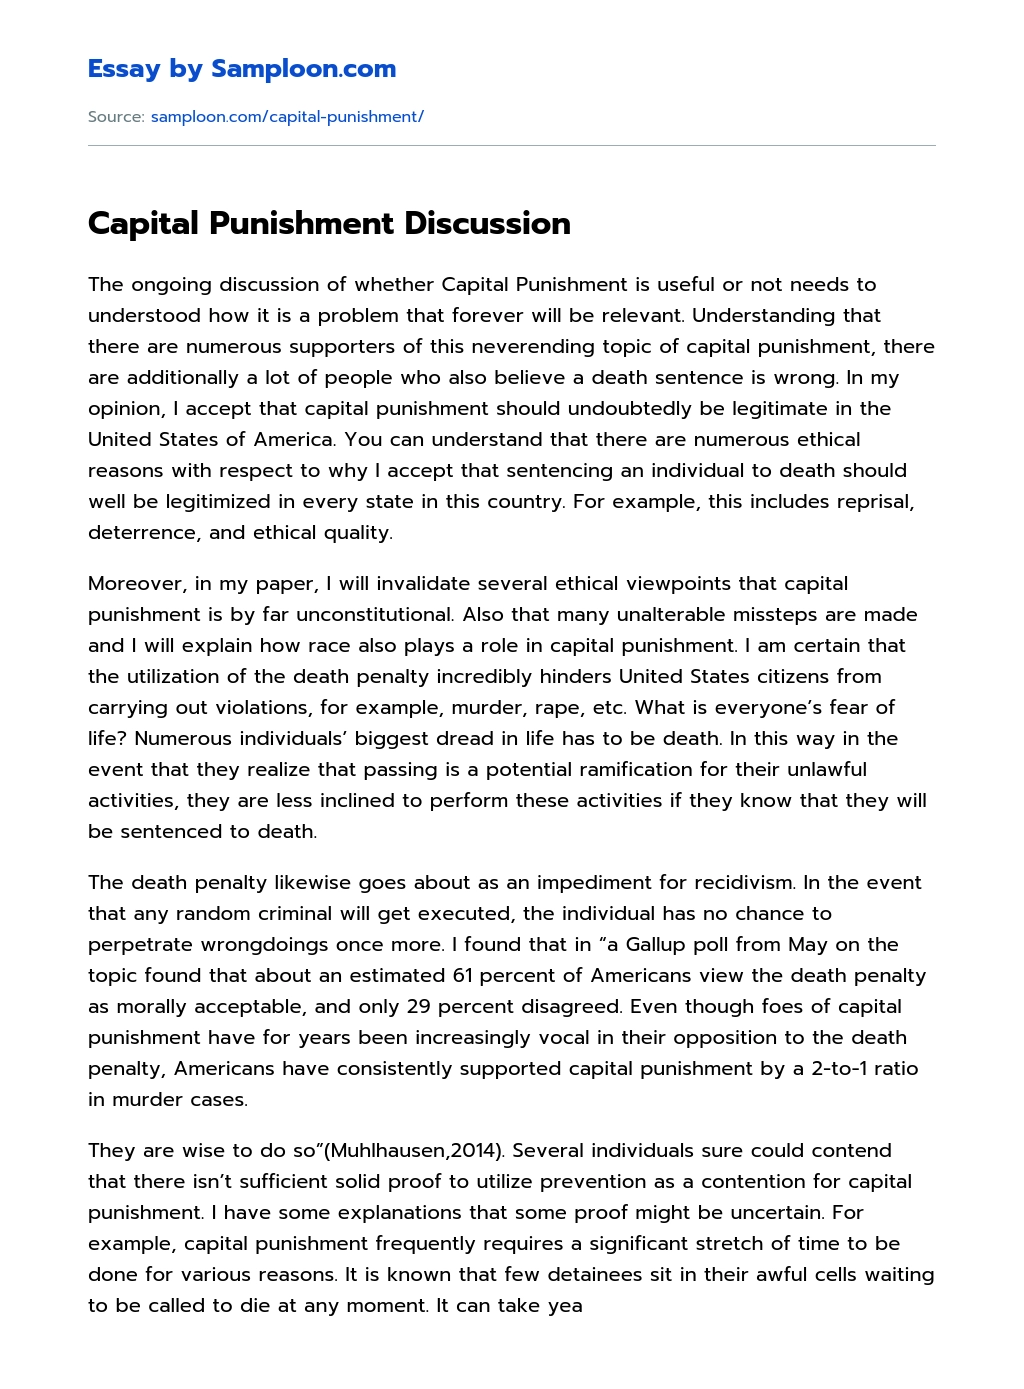 Capital Punishment Discussion essay